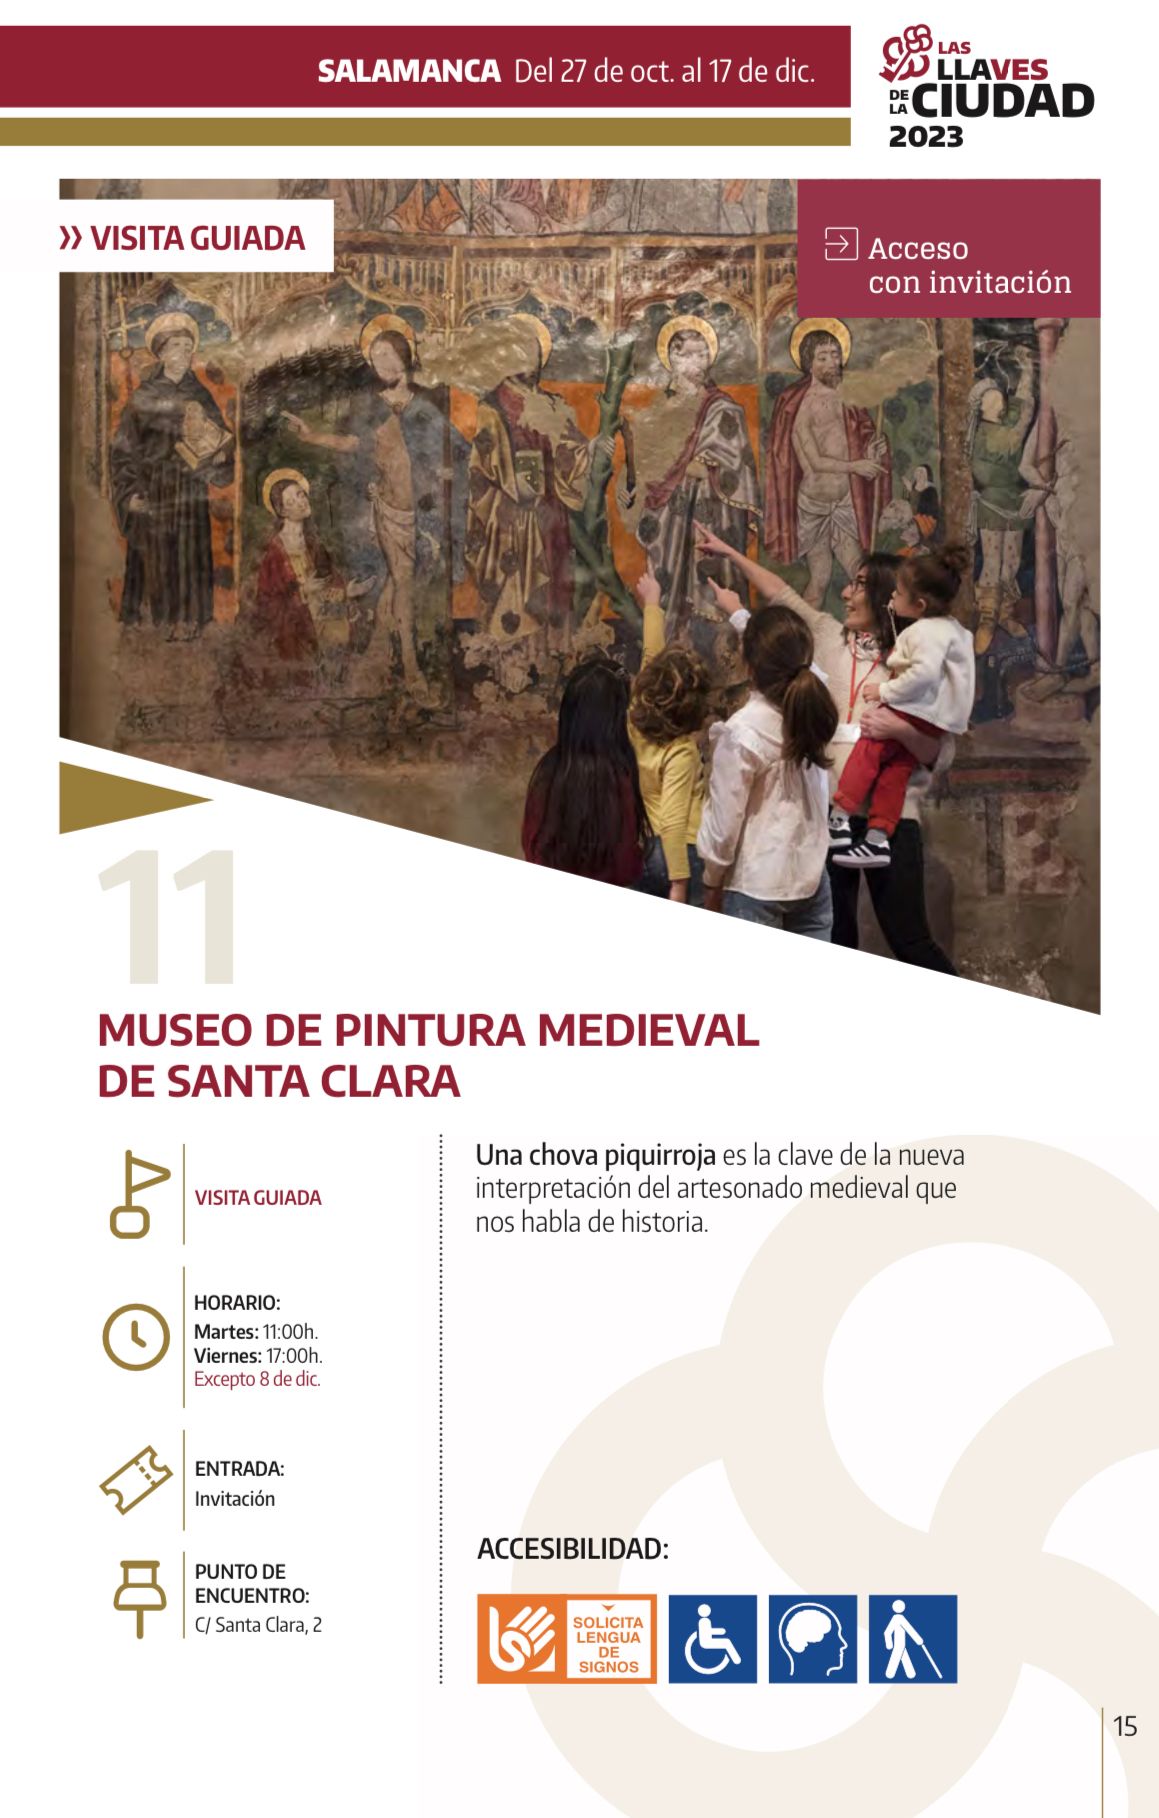 VISITA GUIADA - LAS LLAVES DE LA CIUDAD - Museo de Pintura Medieval de Santa Clara